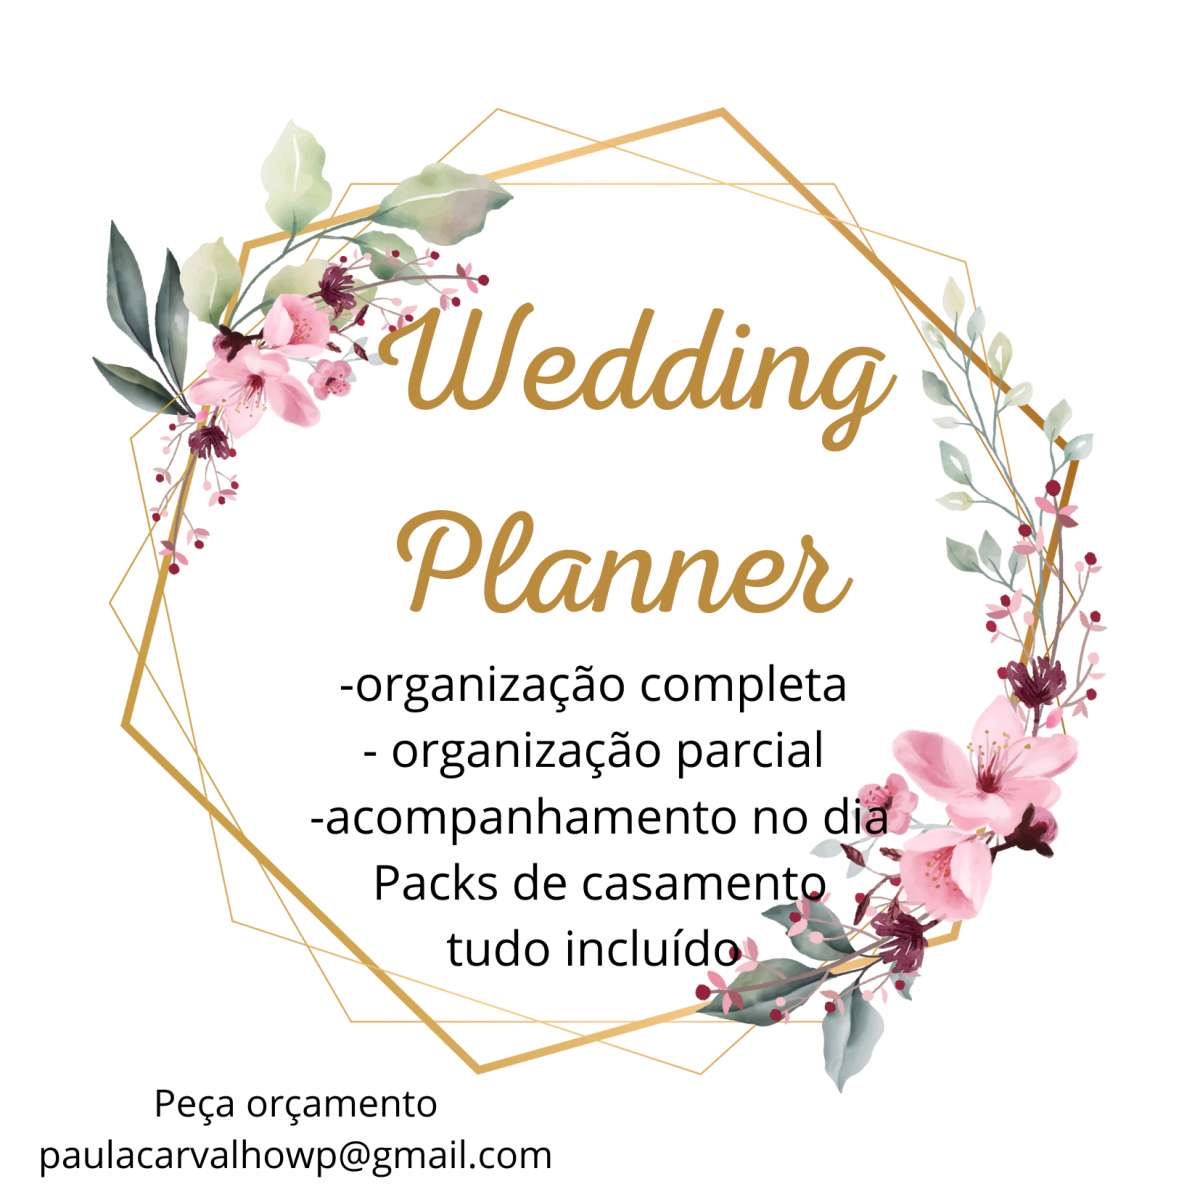 Paula Carvalho organização de eventos - Póvoa de Varzim - Wedding Planning